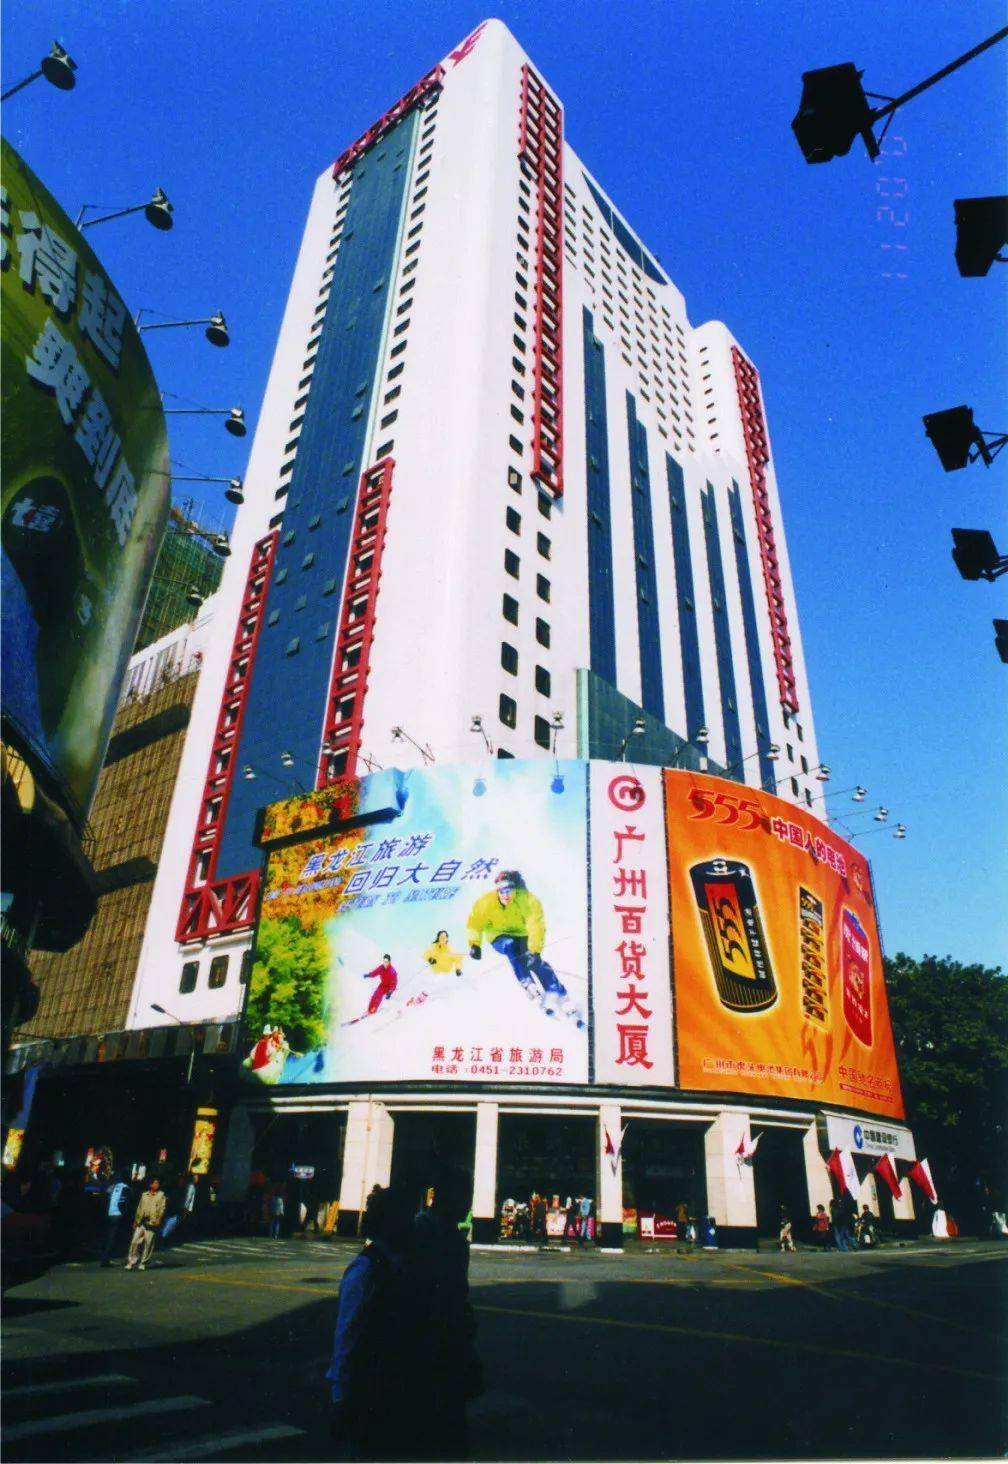 广百百货首店(广州百货大厦)亮相了印象广百它是北京路走过多个年头